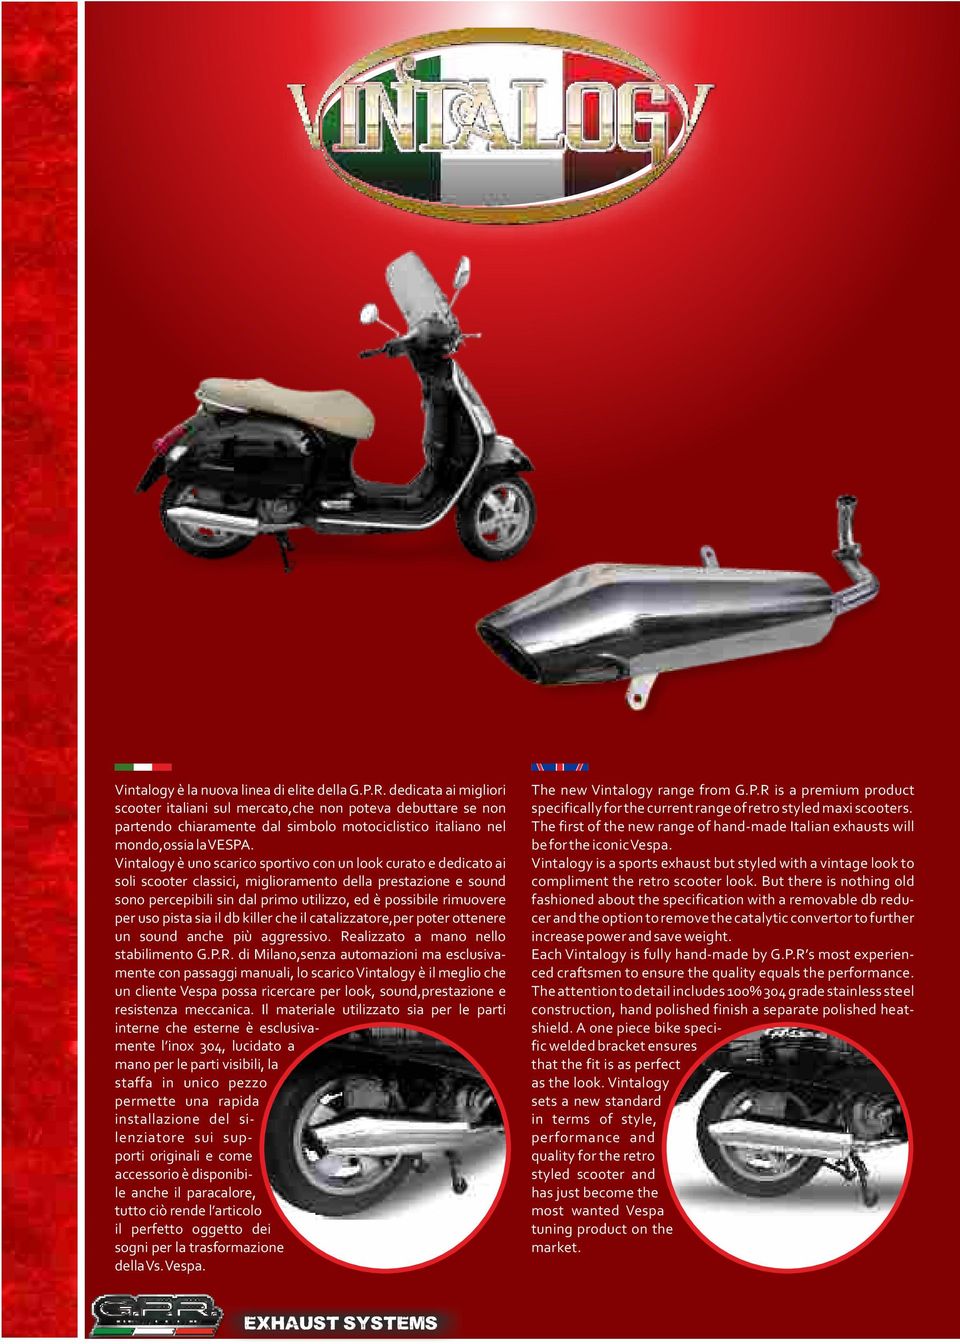 Vintalogy è uno scarico sportivo con un look curato e dedicato ai soli scooter classici, miglioramento della prestazione e sound sono percepibili sin dal primo utilizzo, ed è possibile rimuovere per